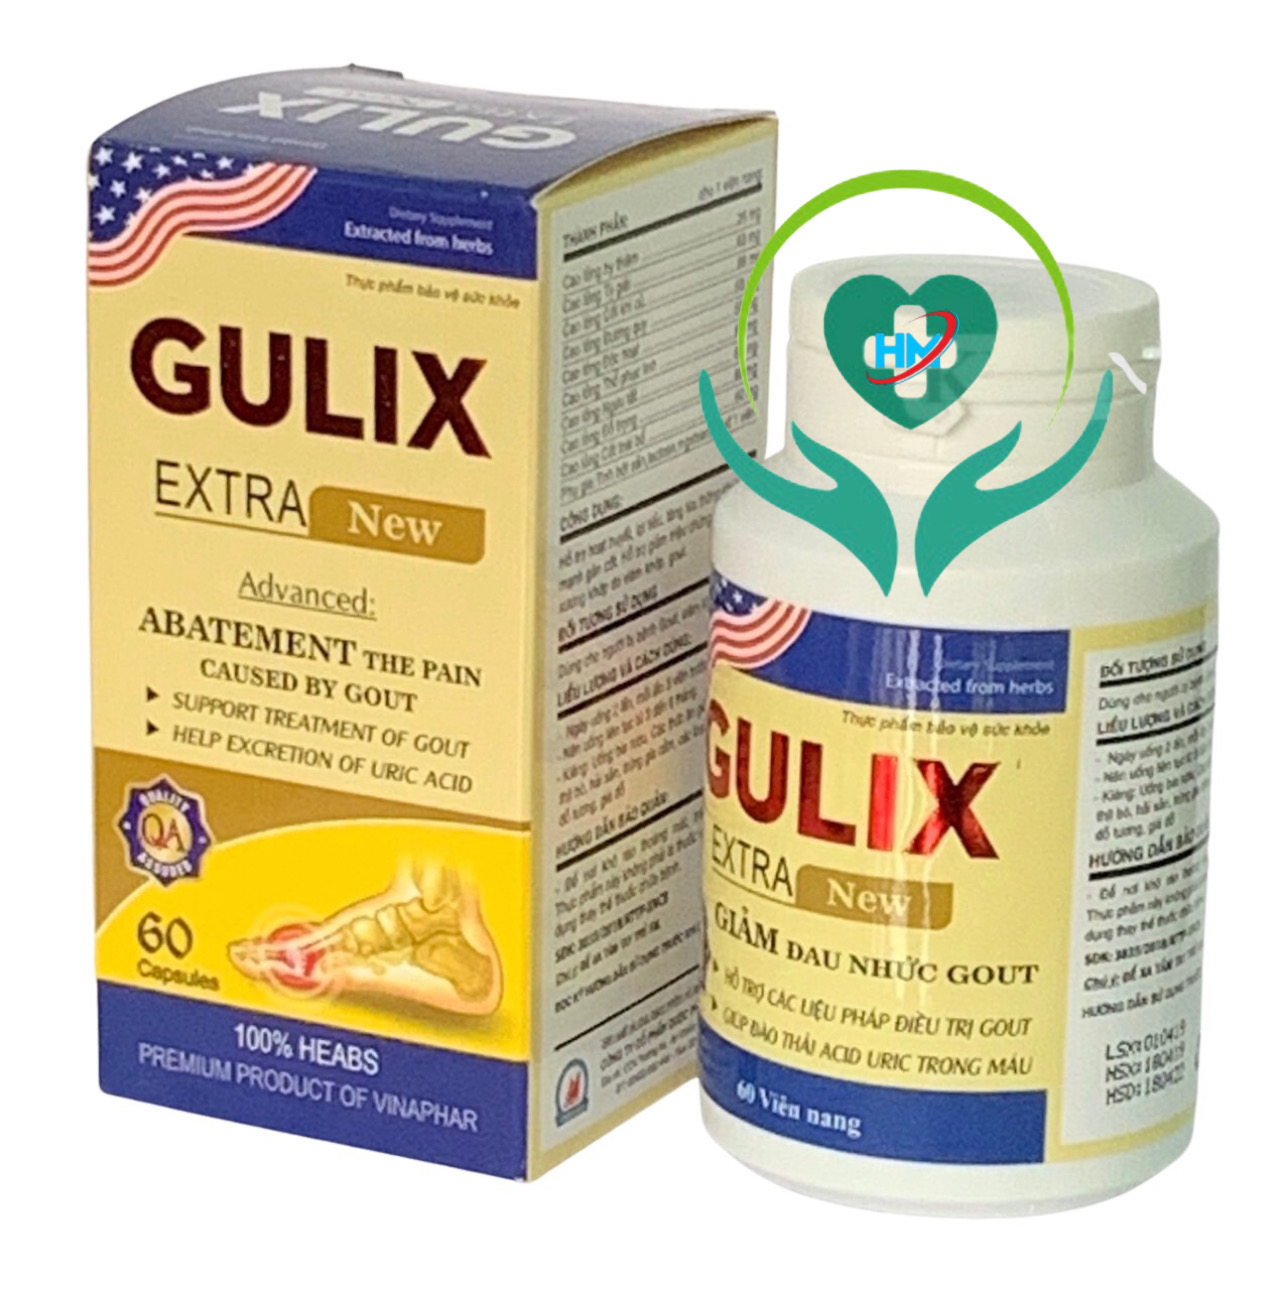 ￼Viên Gout  GULIX Extra new Vinaphar Hộp 60 Viên - Tăng cường chuyển hóa, lợi tiểu, giúp đào thải acid uric trong máu